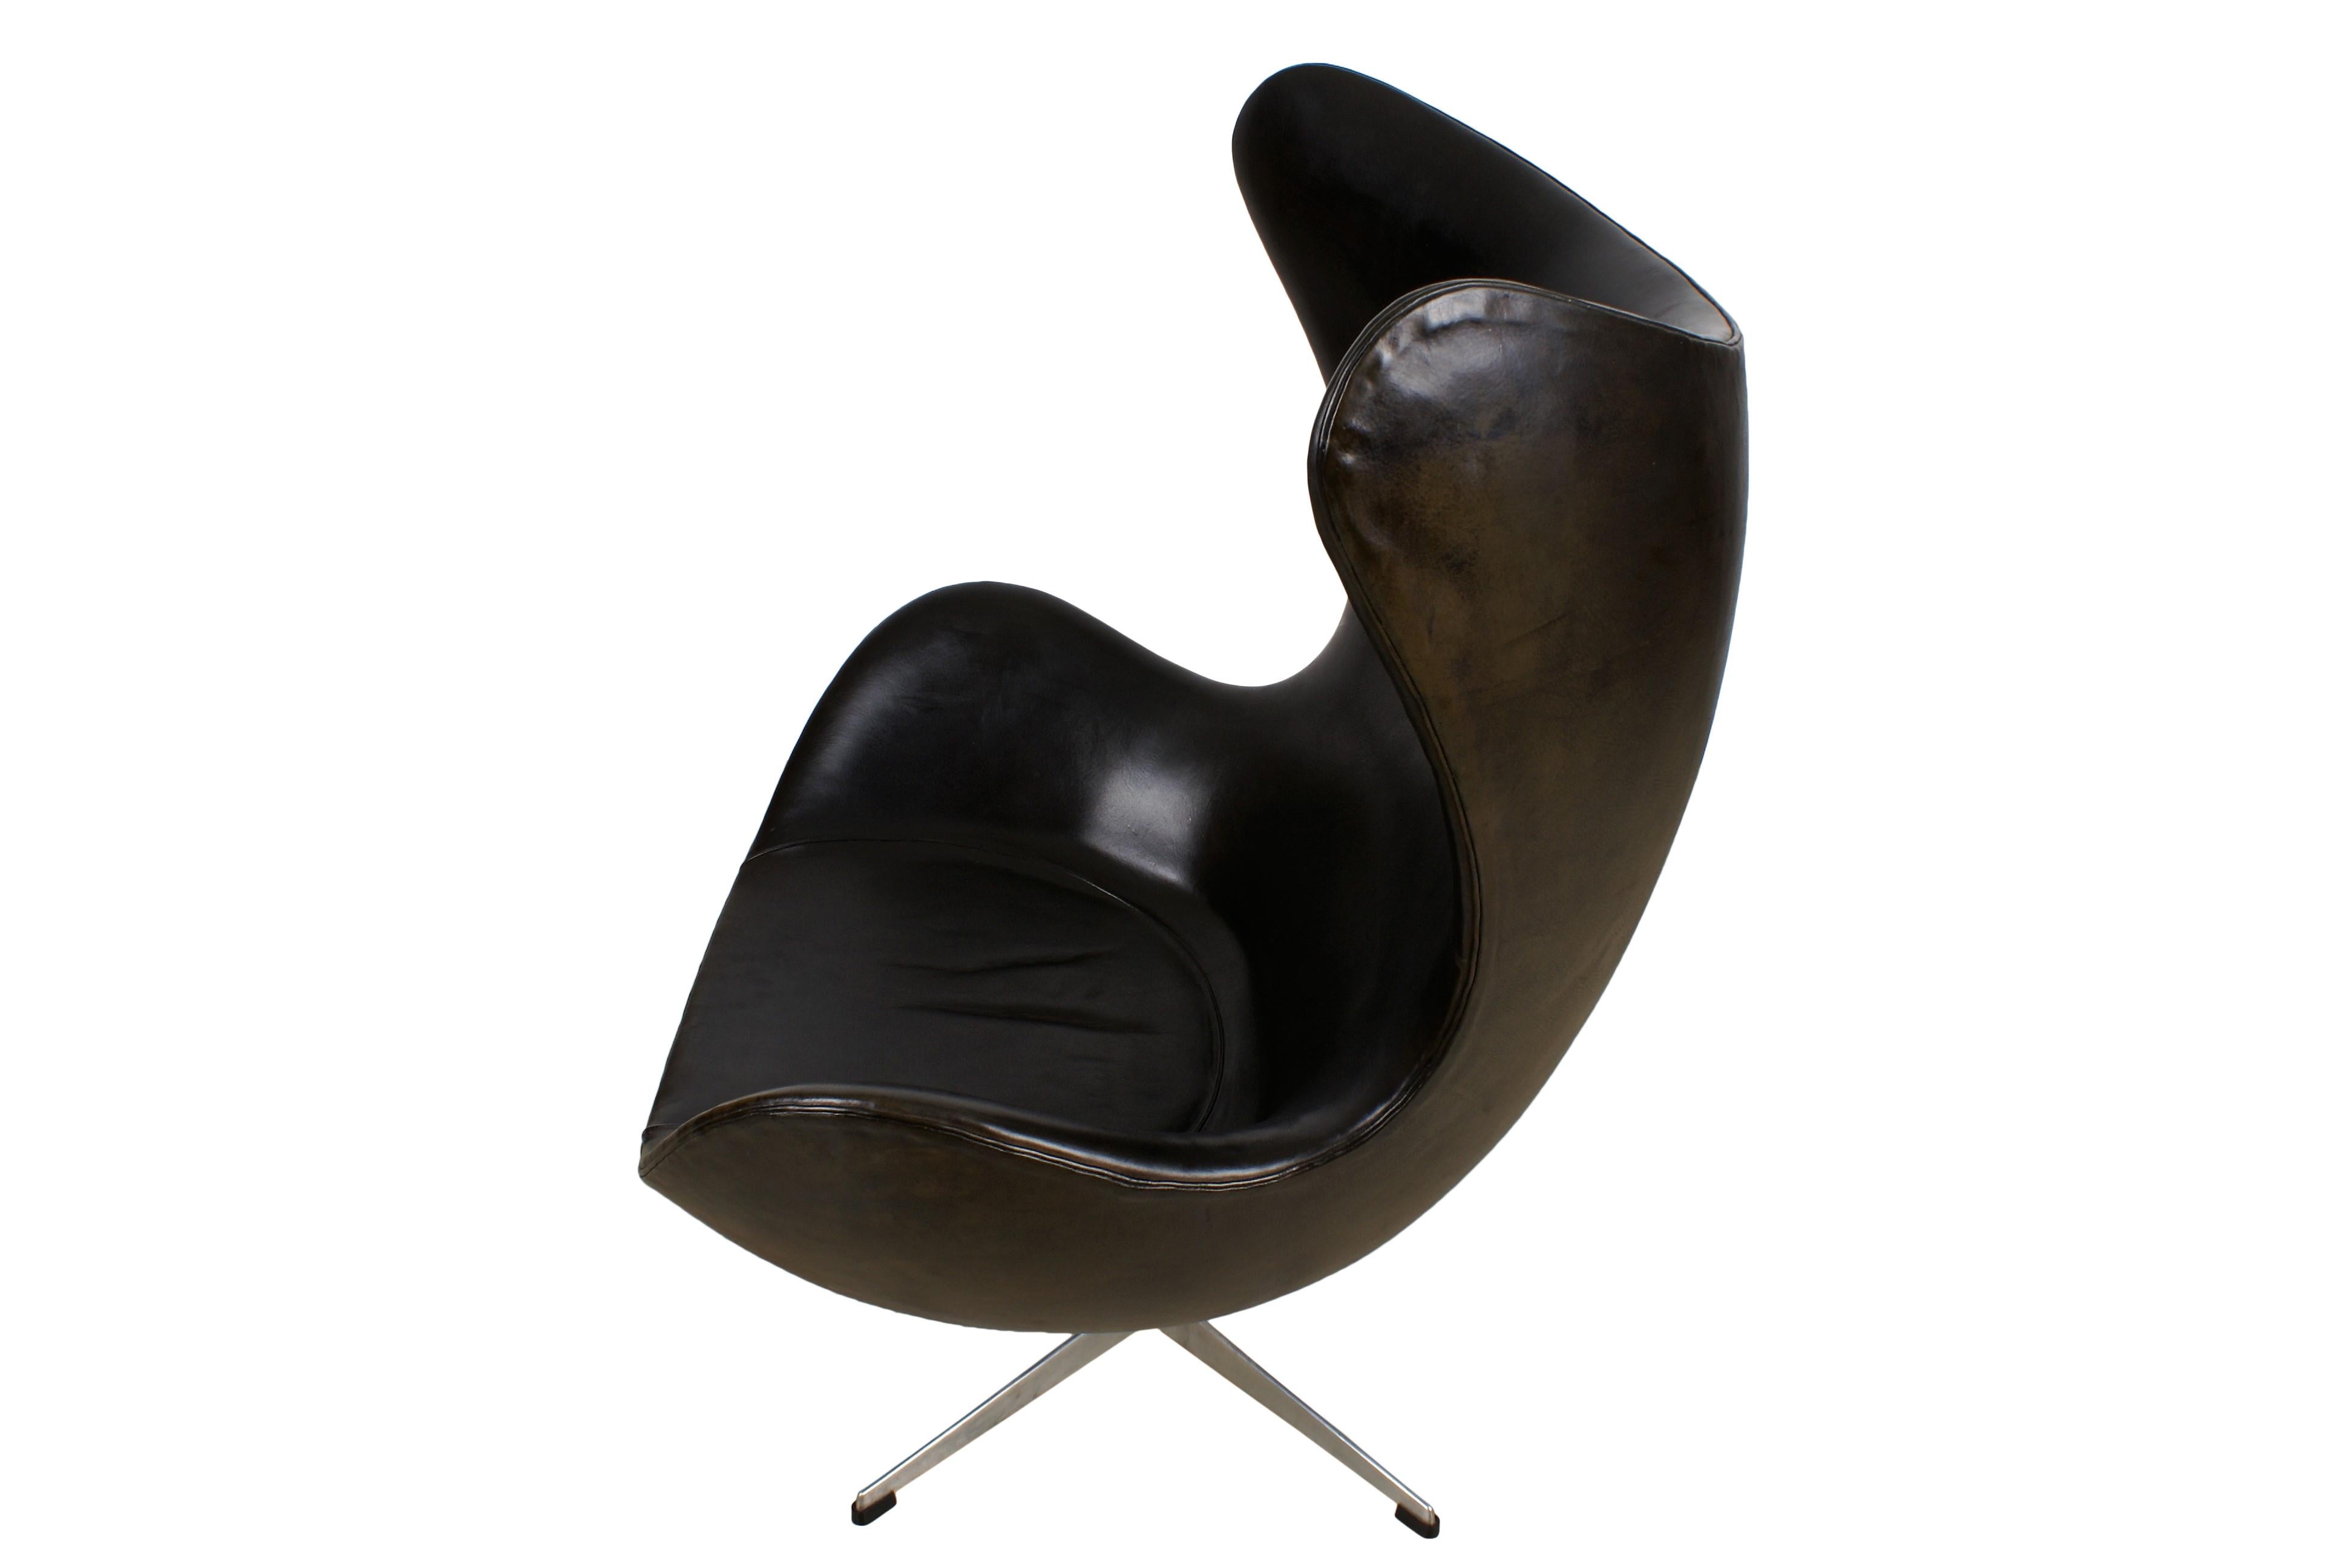 Danish Arne Jacobsen Early Egg Chair in Black Leather, Fritz Hansen, 1958